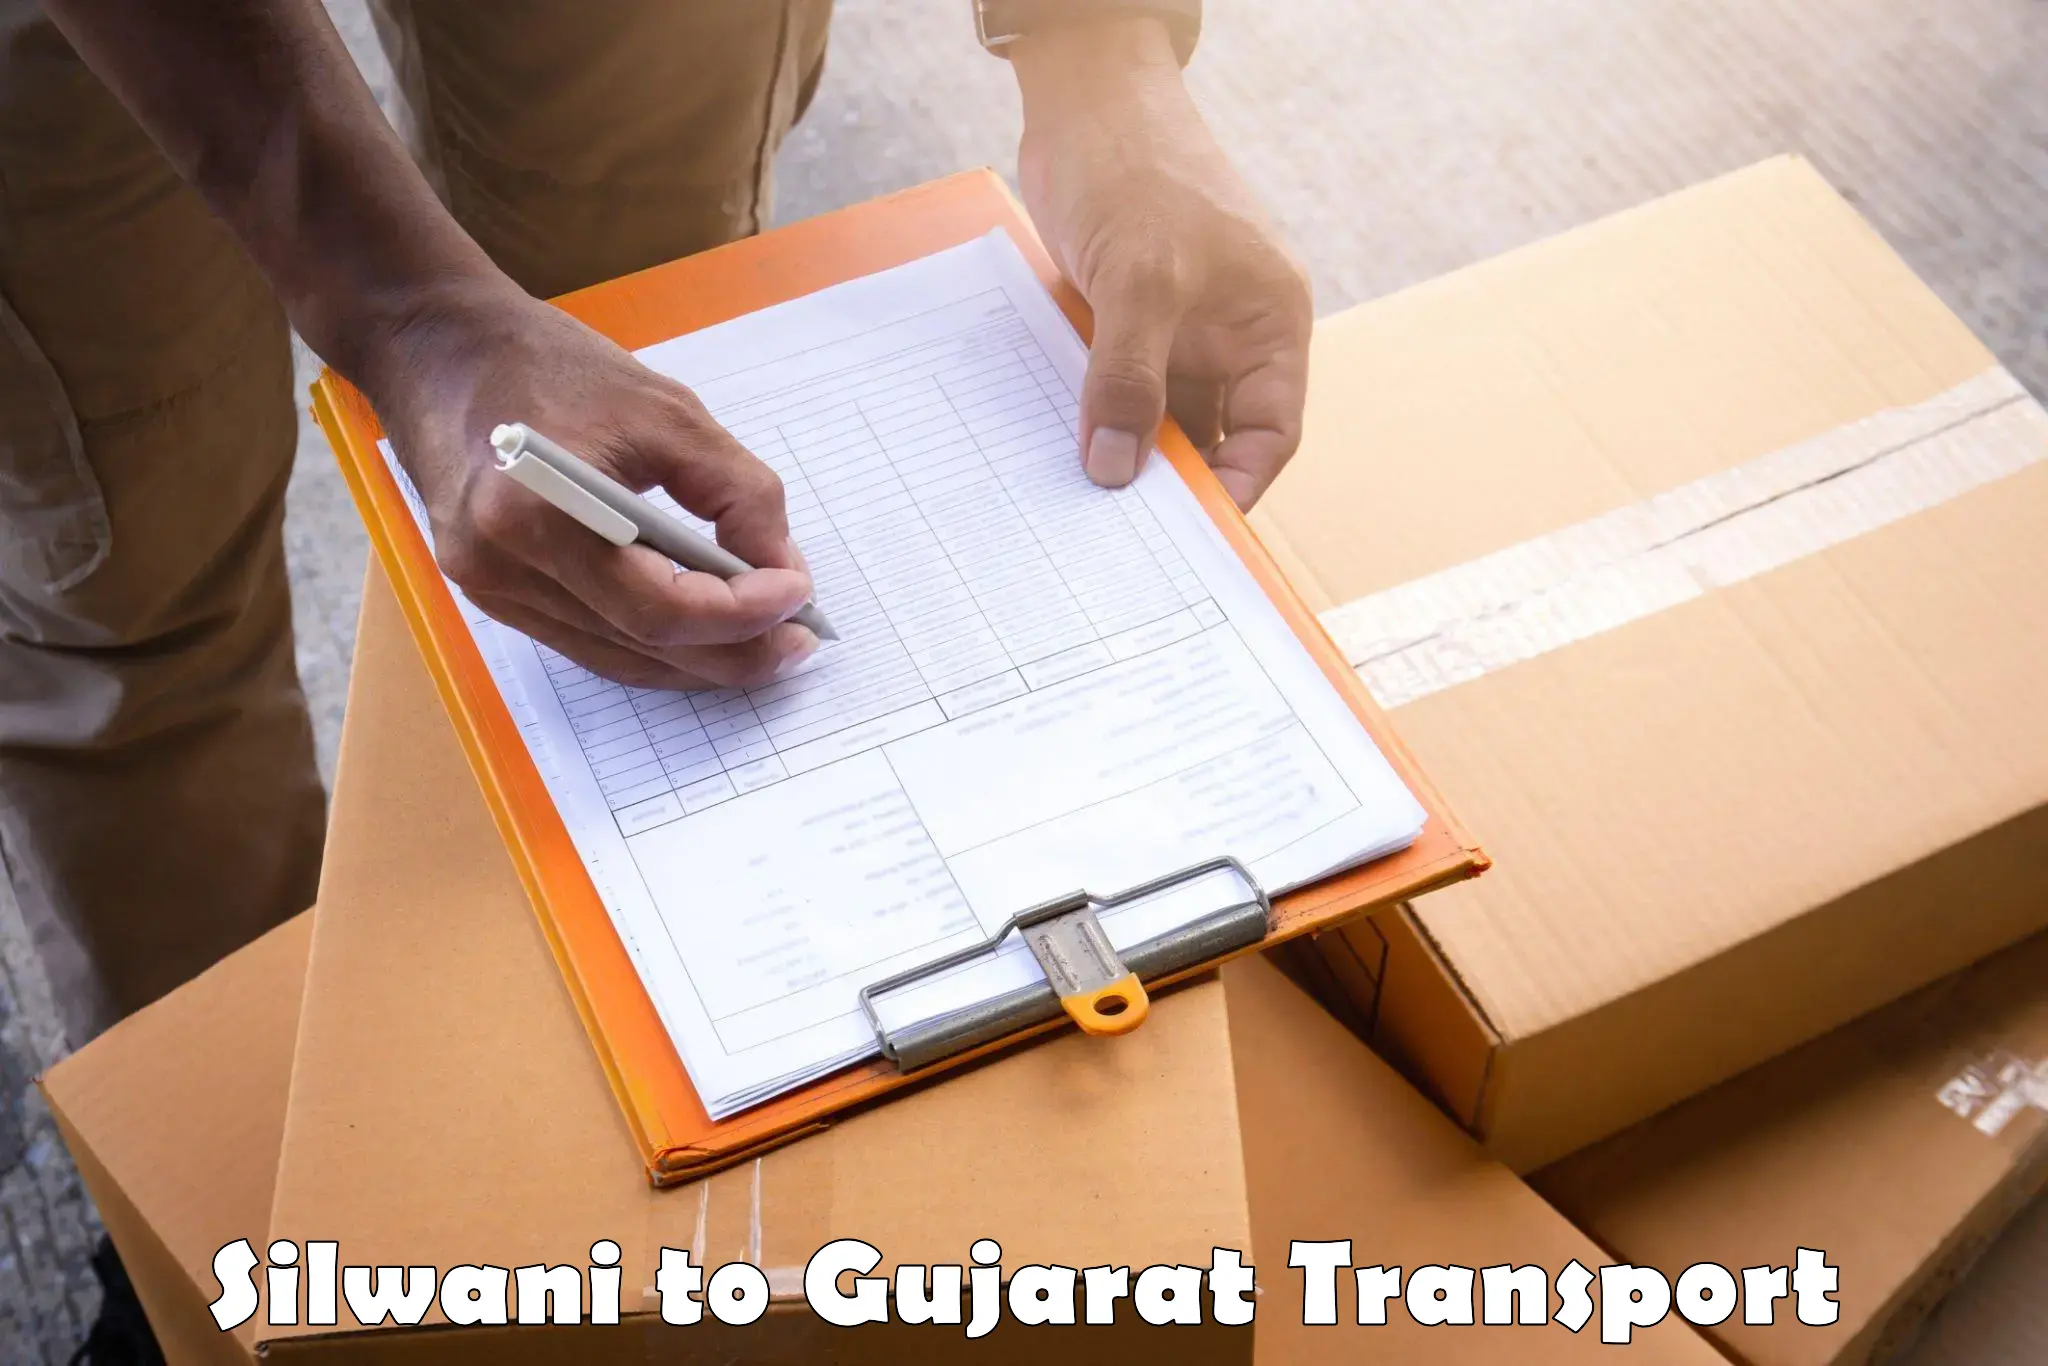 Furniture transport service Silwani to Girgadhada